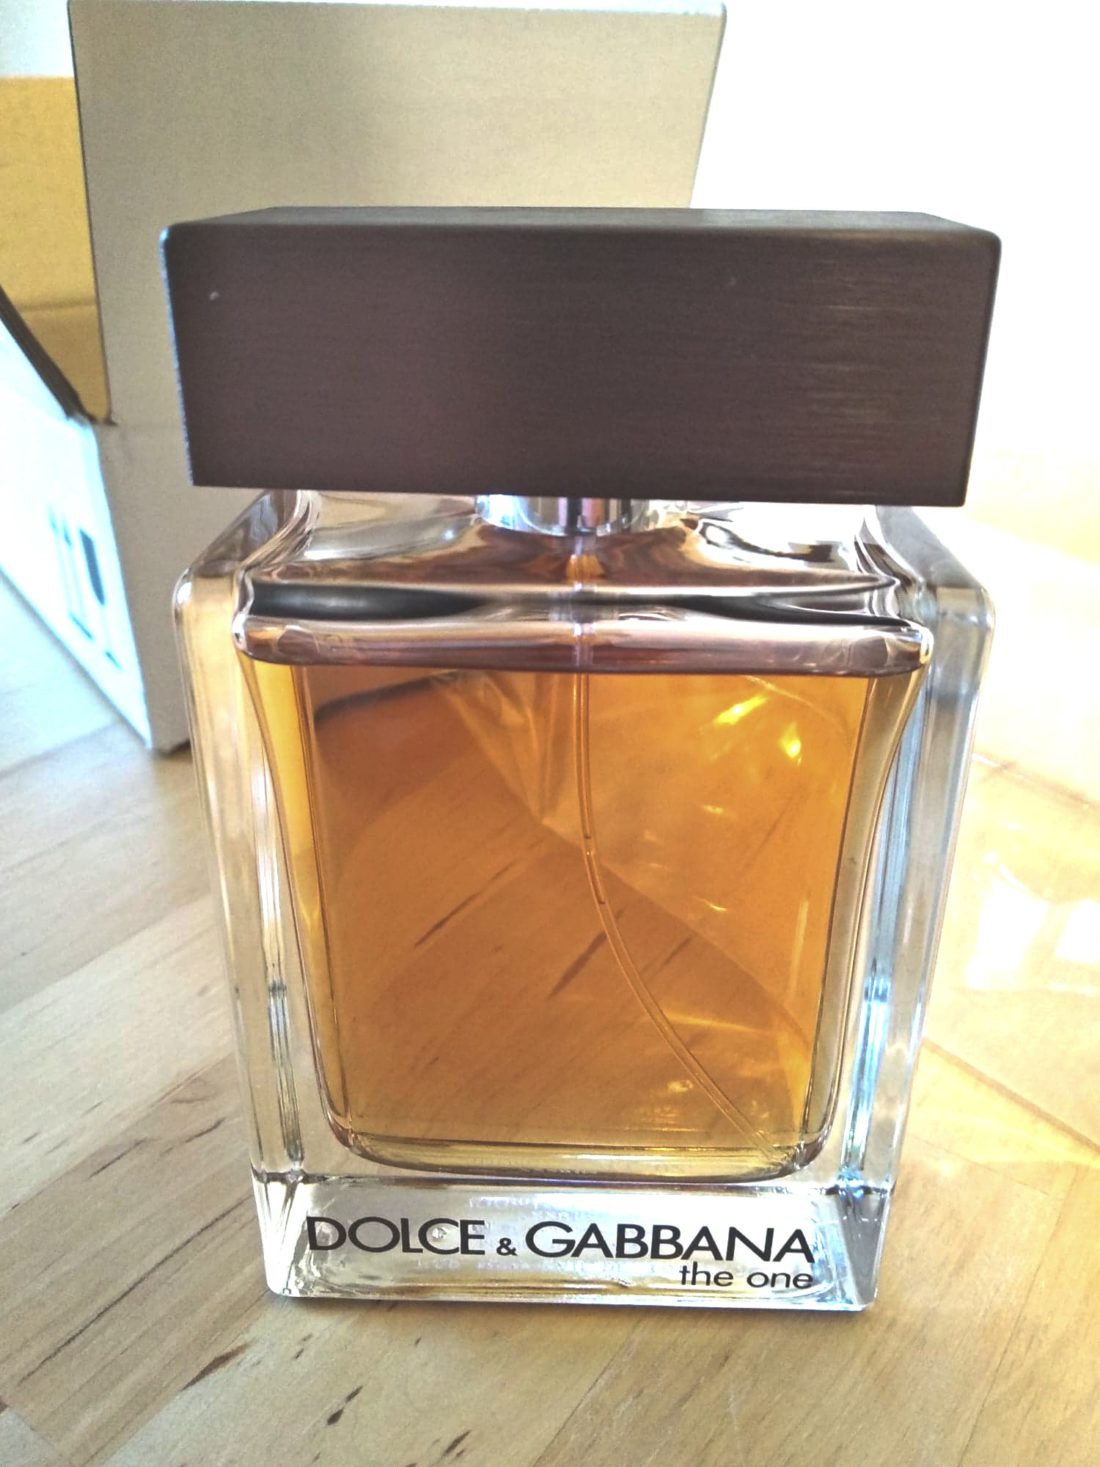 Jedne z perfumy zakupionych na E-Glamour - Dolce Gabbana - The One for Man